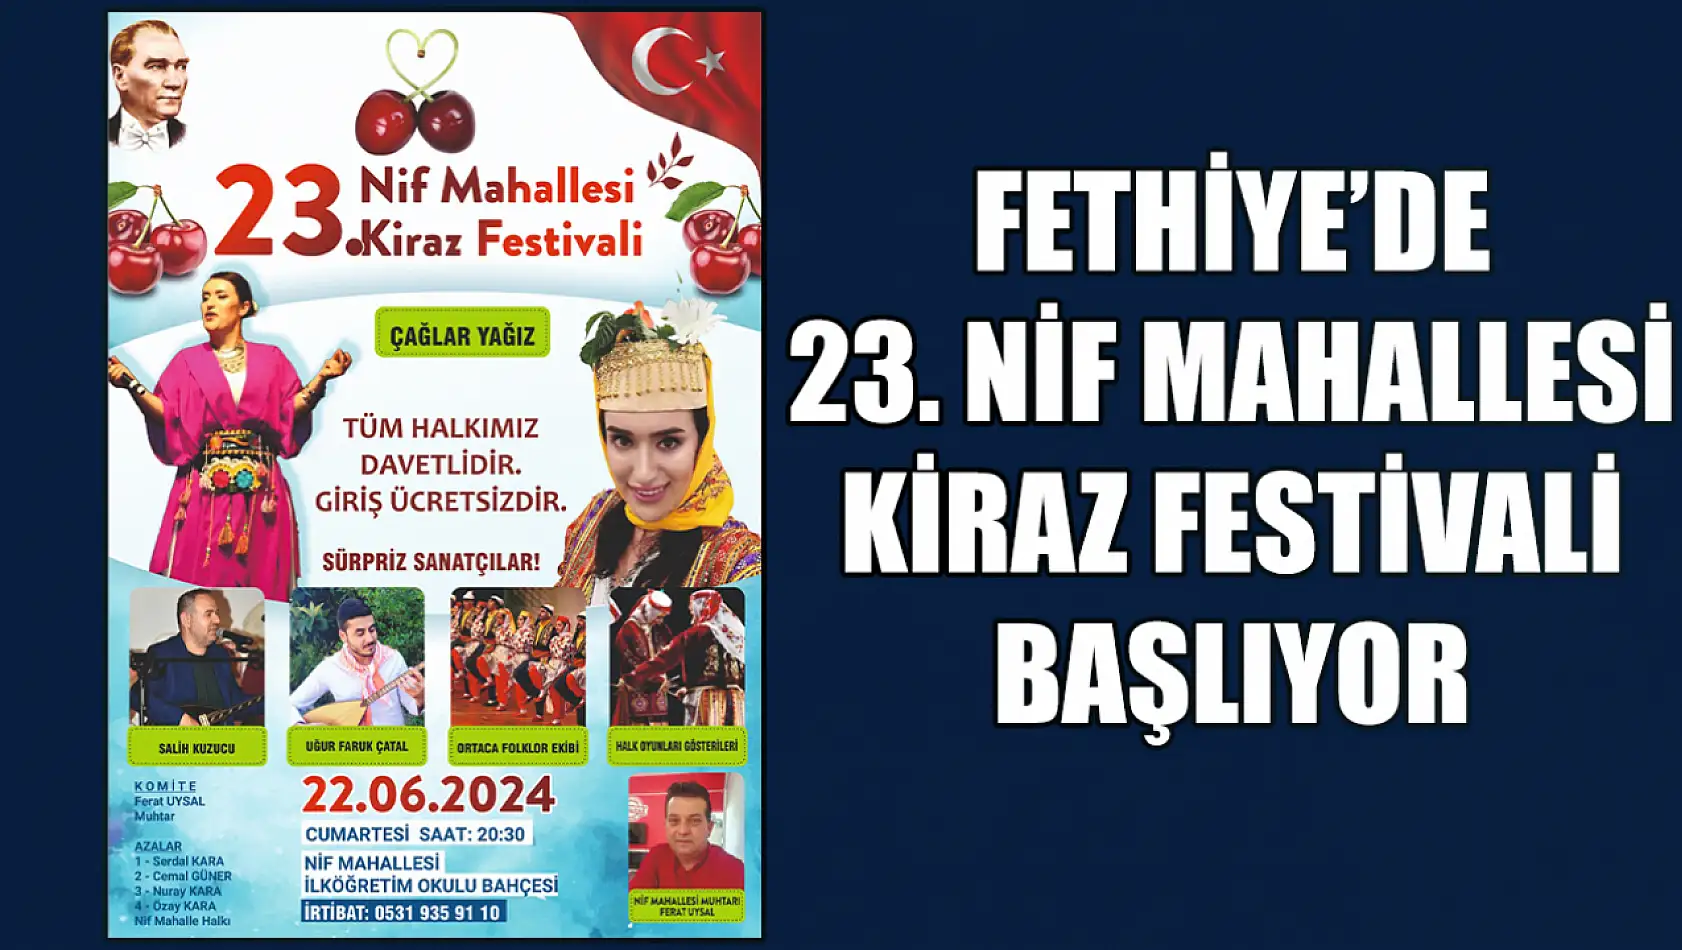 Fethiye'de 23. Nif Mahallesi Kiraz Festivali Başlıyor